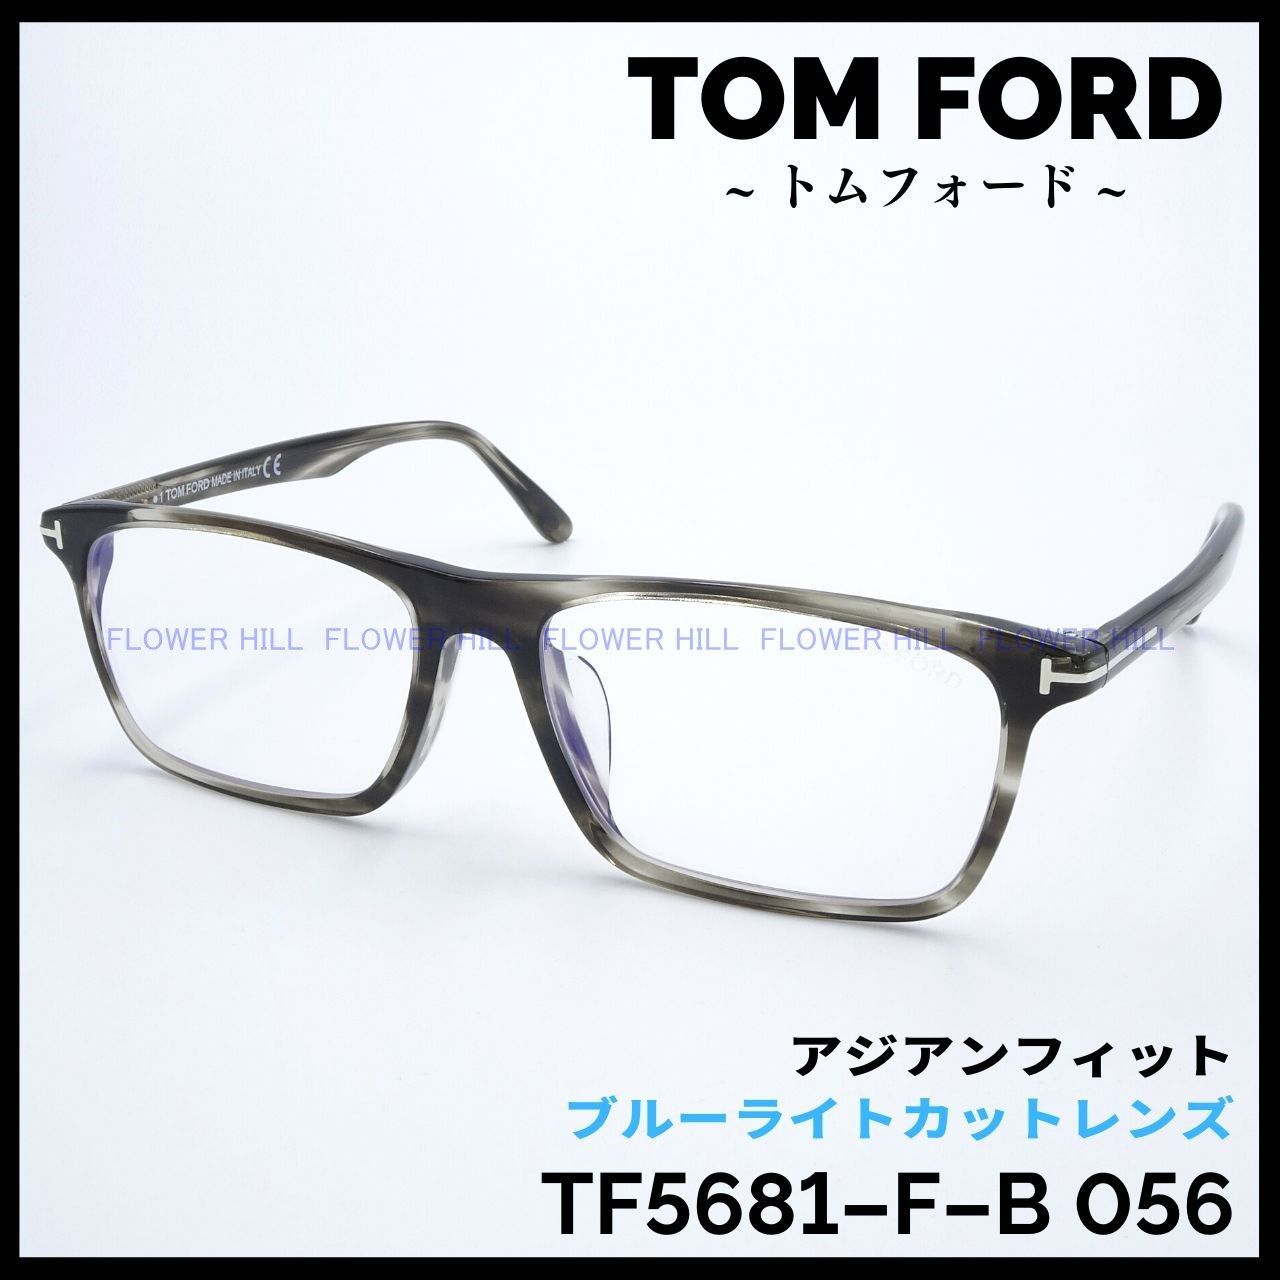 TOM FORD トムフォード メガネ TF5681-F-B 056 スクエア アジアンフィット グレーハバナ ブルーライトカットレンズ イタリア製  メンズ レディース めがね 眼鏡